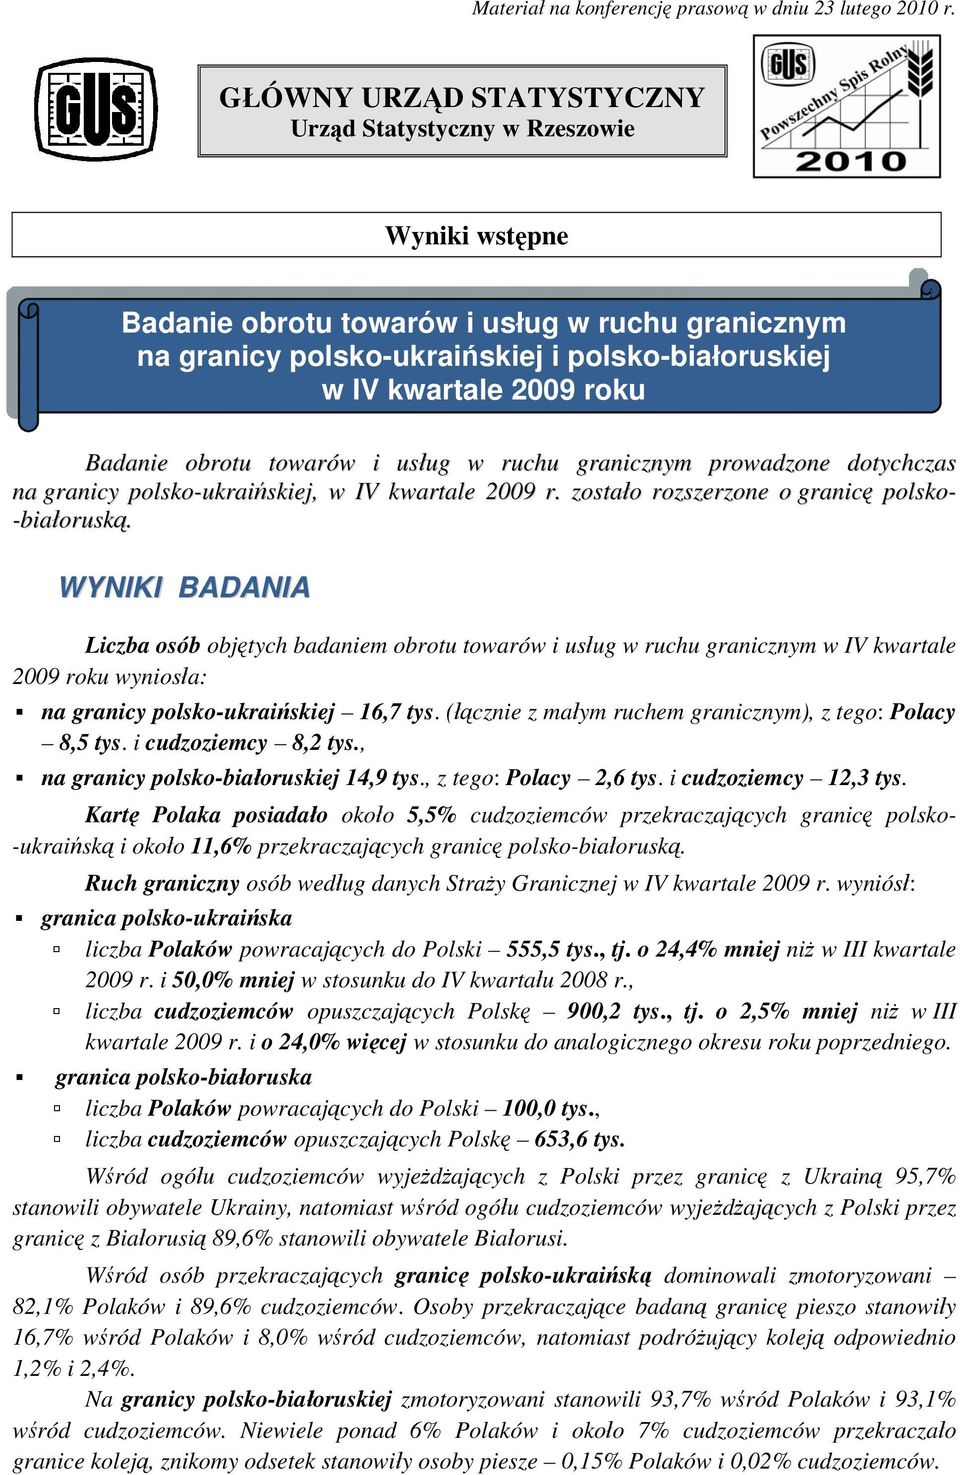 Badanie obrotu towarów i usług w ruchu granicznym prowadzone dotychczas na granicy polsko-ukraińskiej, w IV kwartale 2009 r. zostało rozszerzone o granicę polsko- -białoruską.